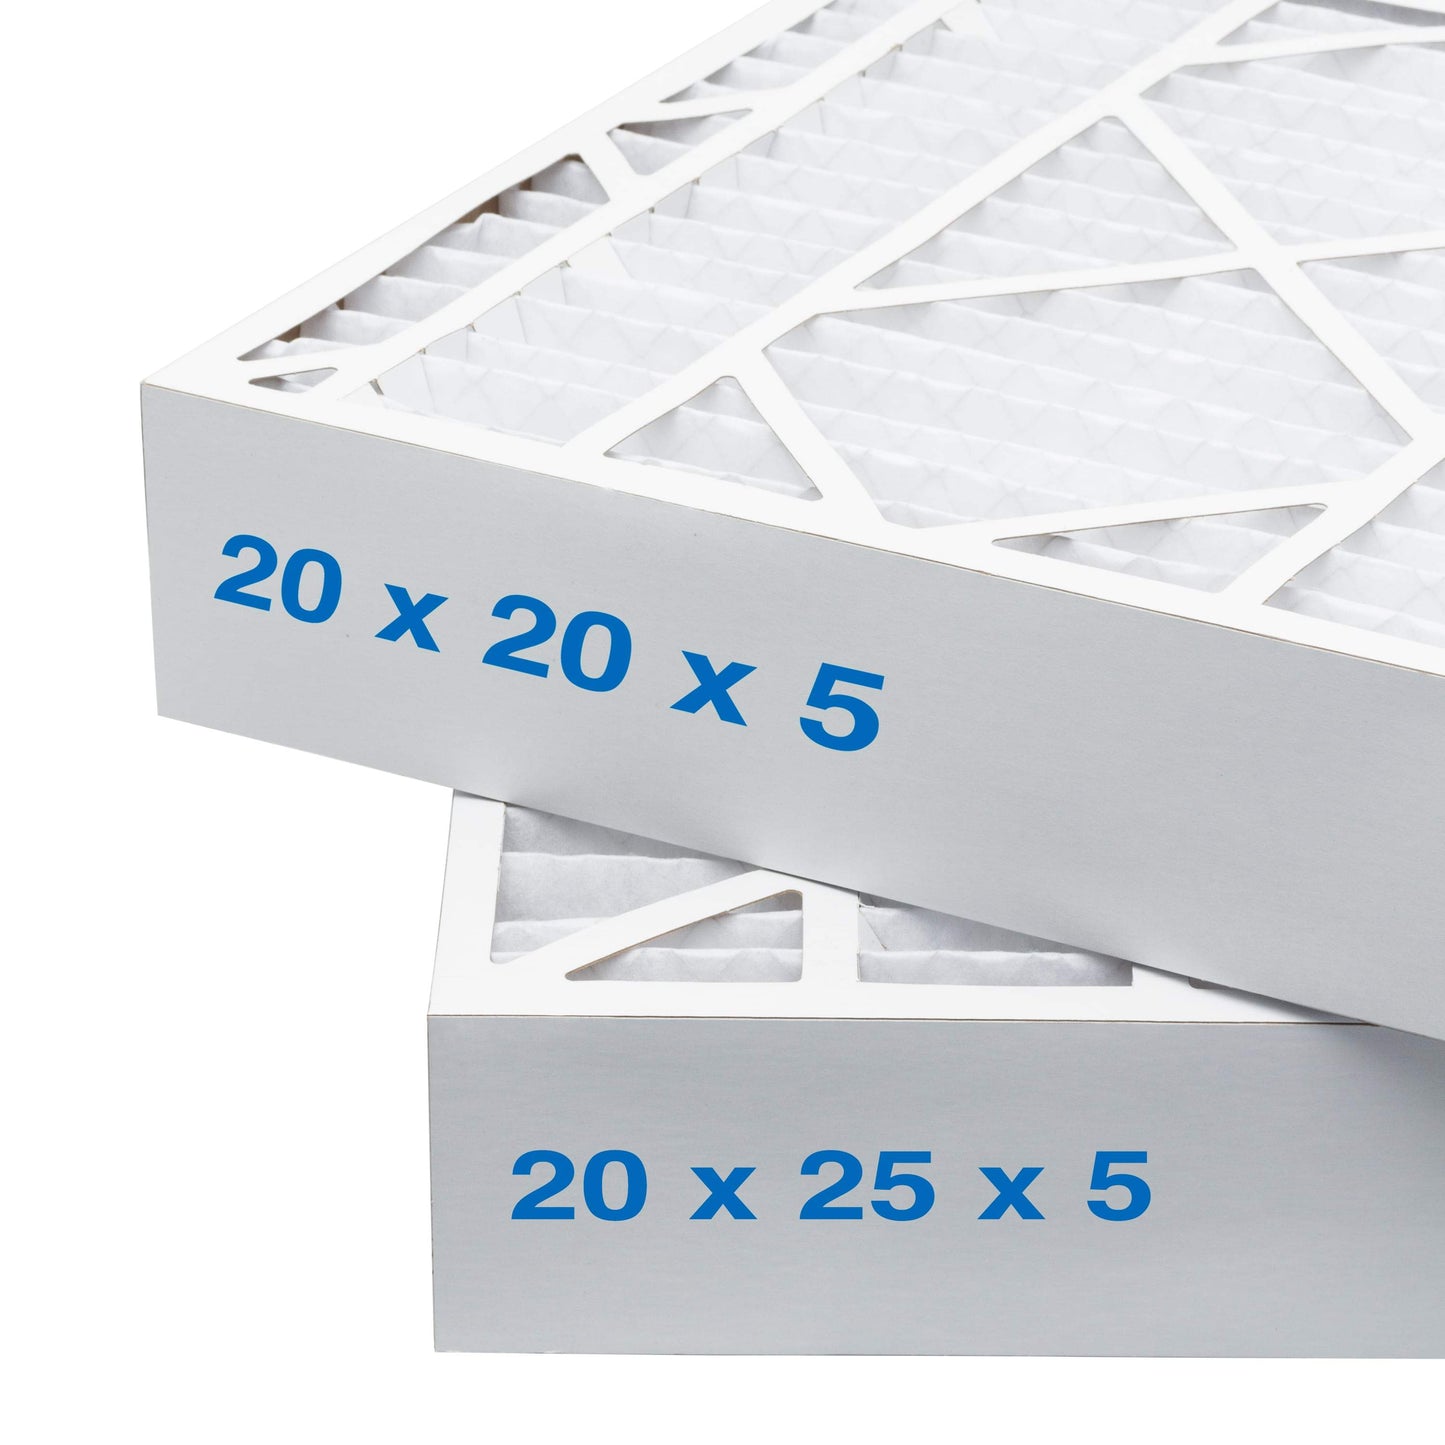 20x20x5 Air Filter - AC Furnace Filter